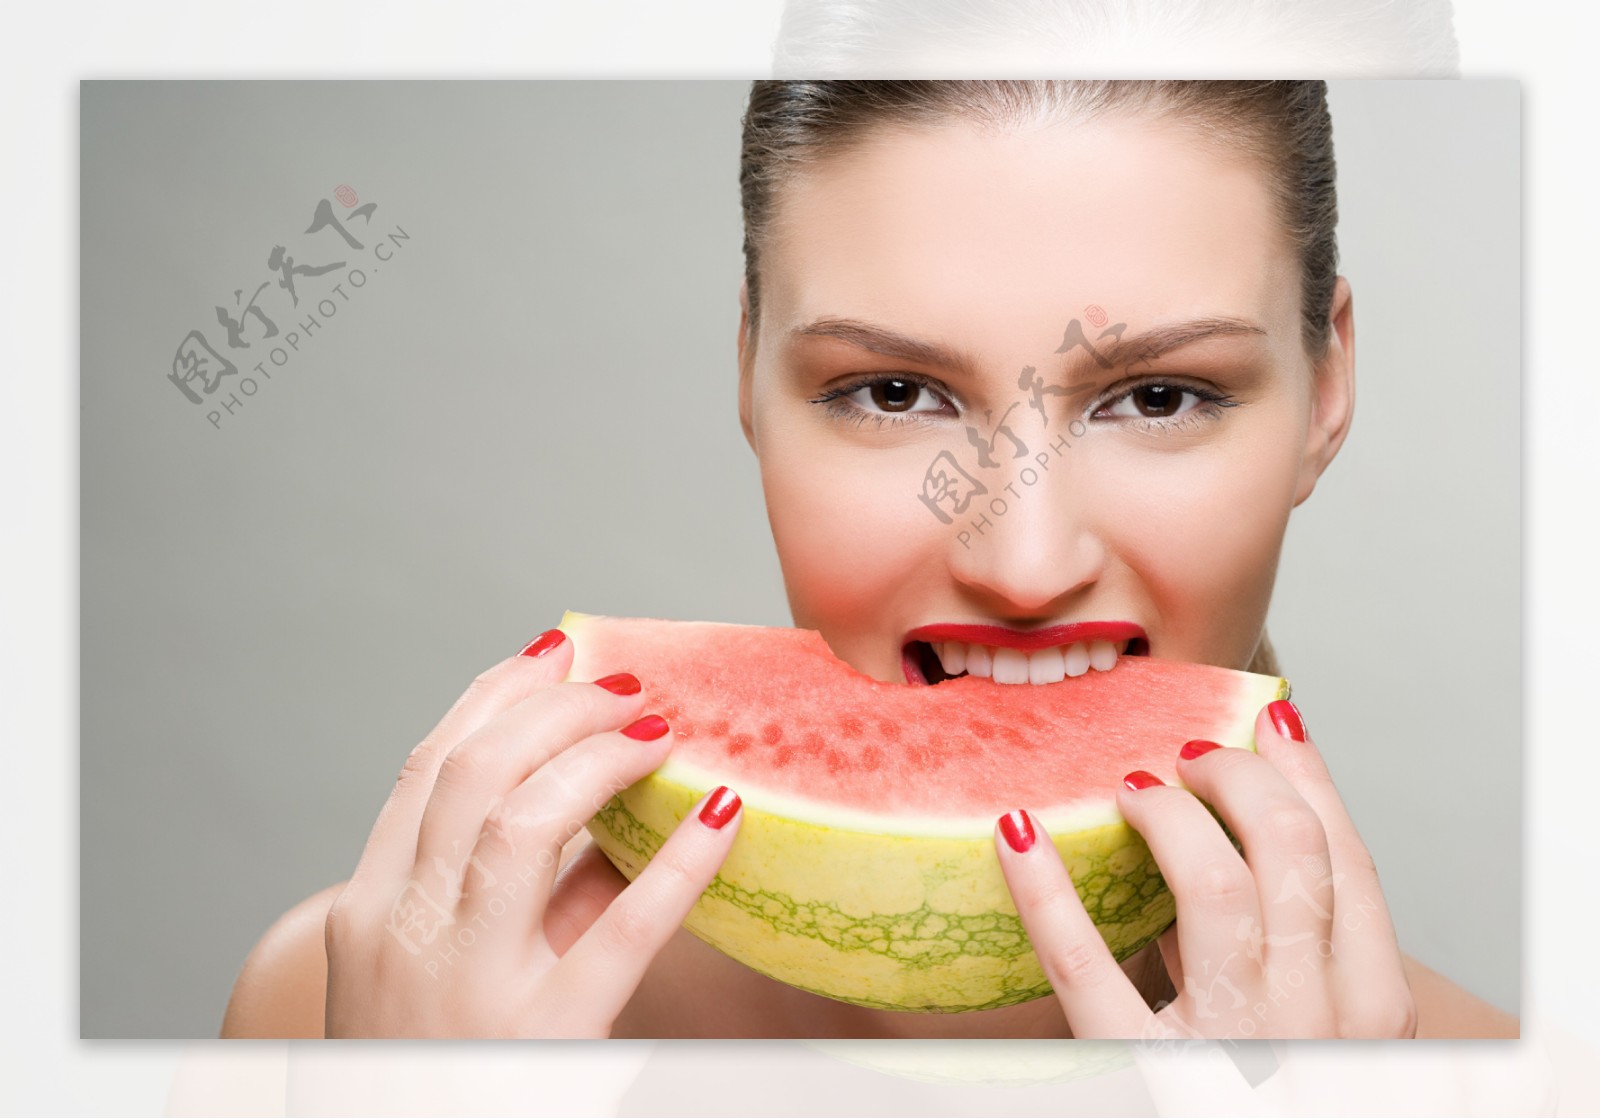 吃西瓜的女人图片